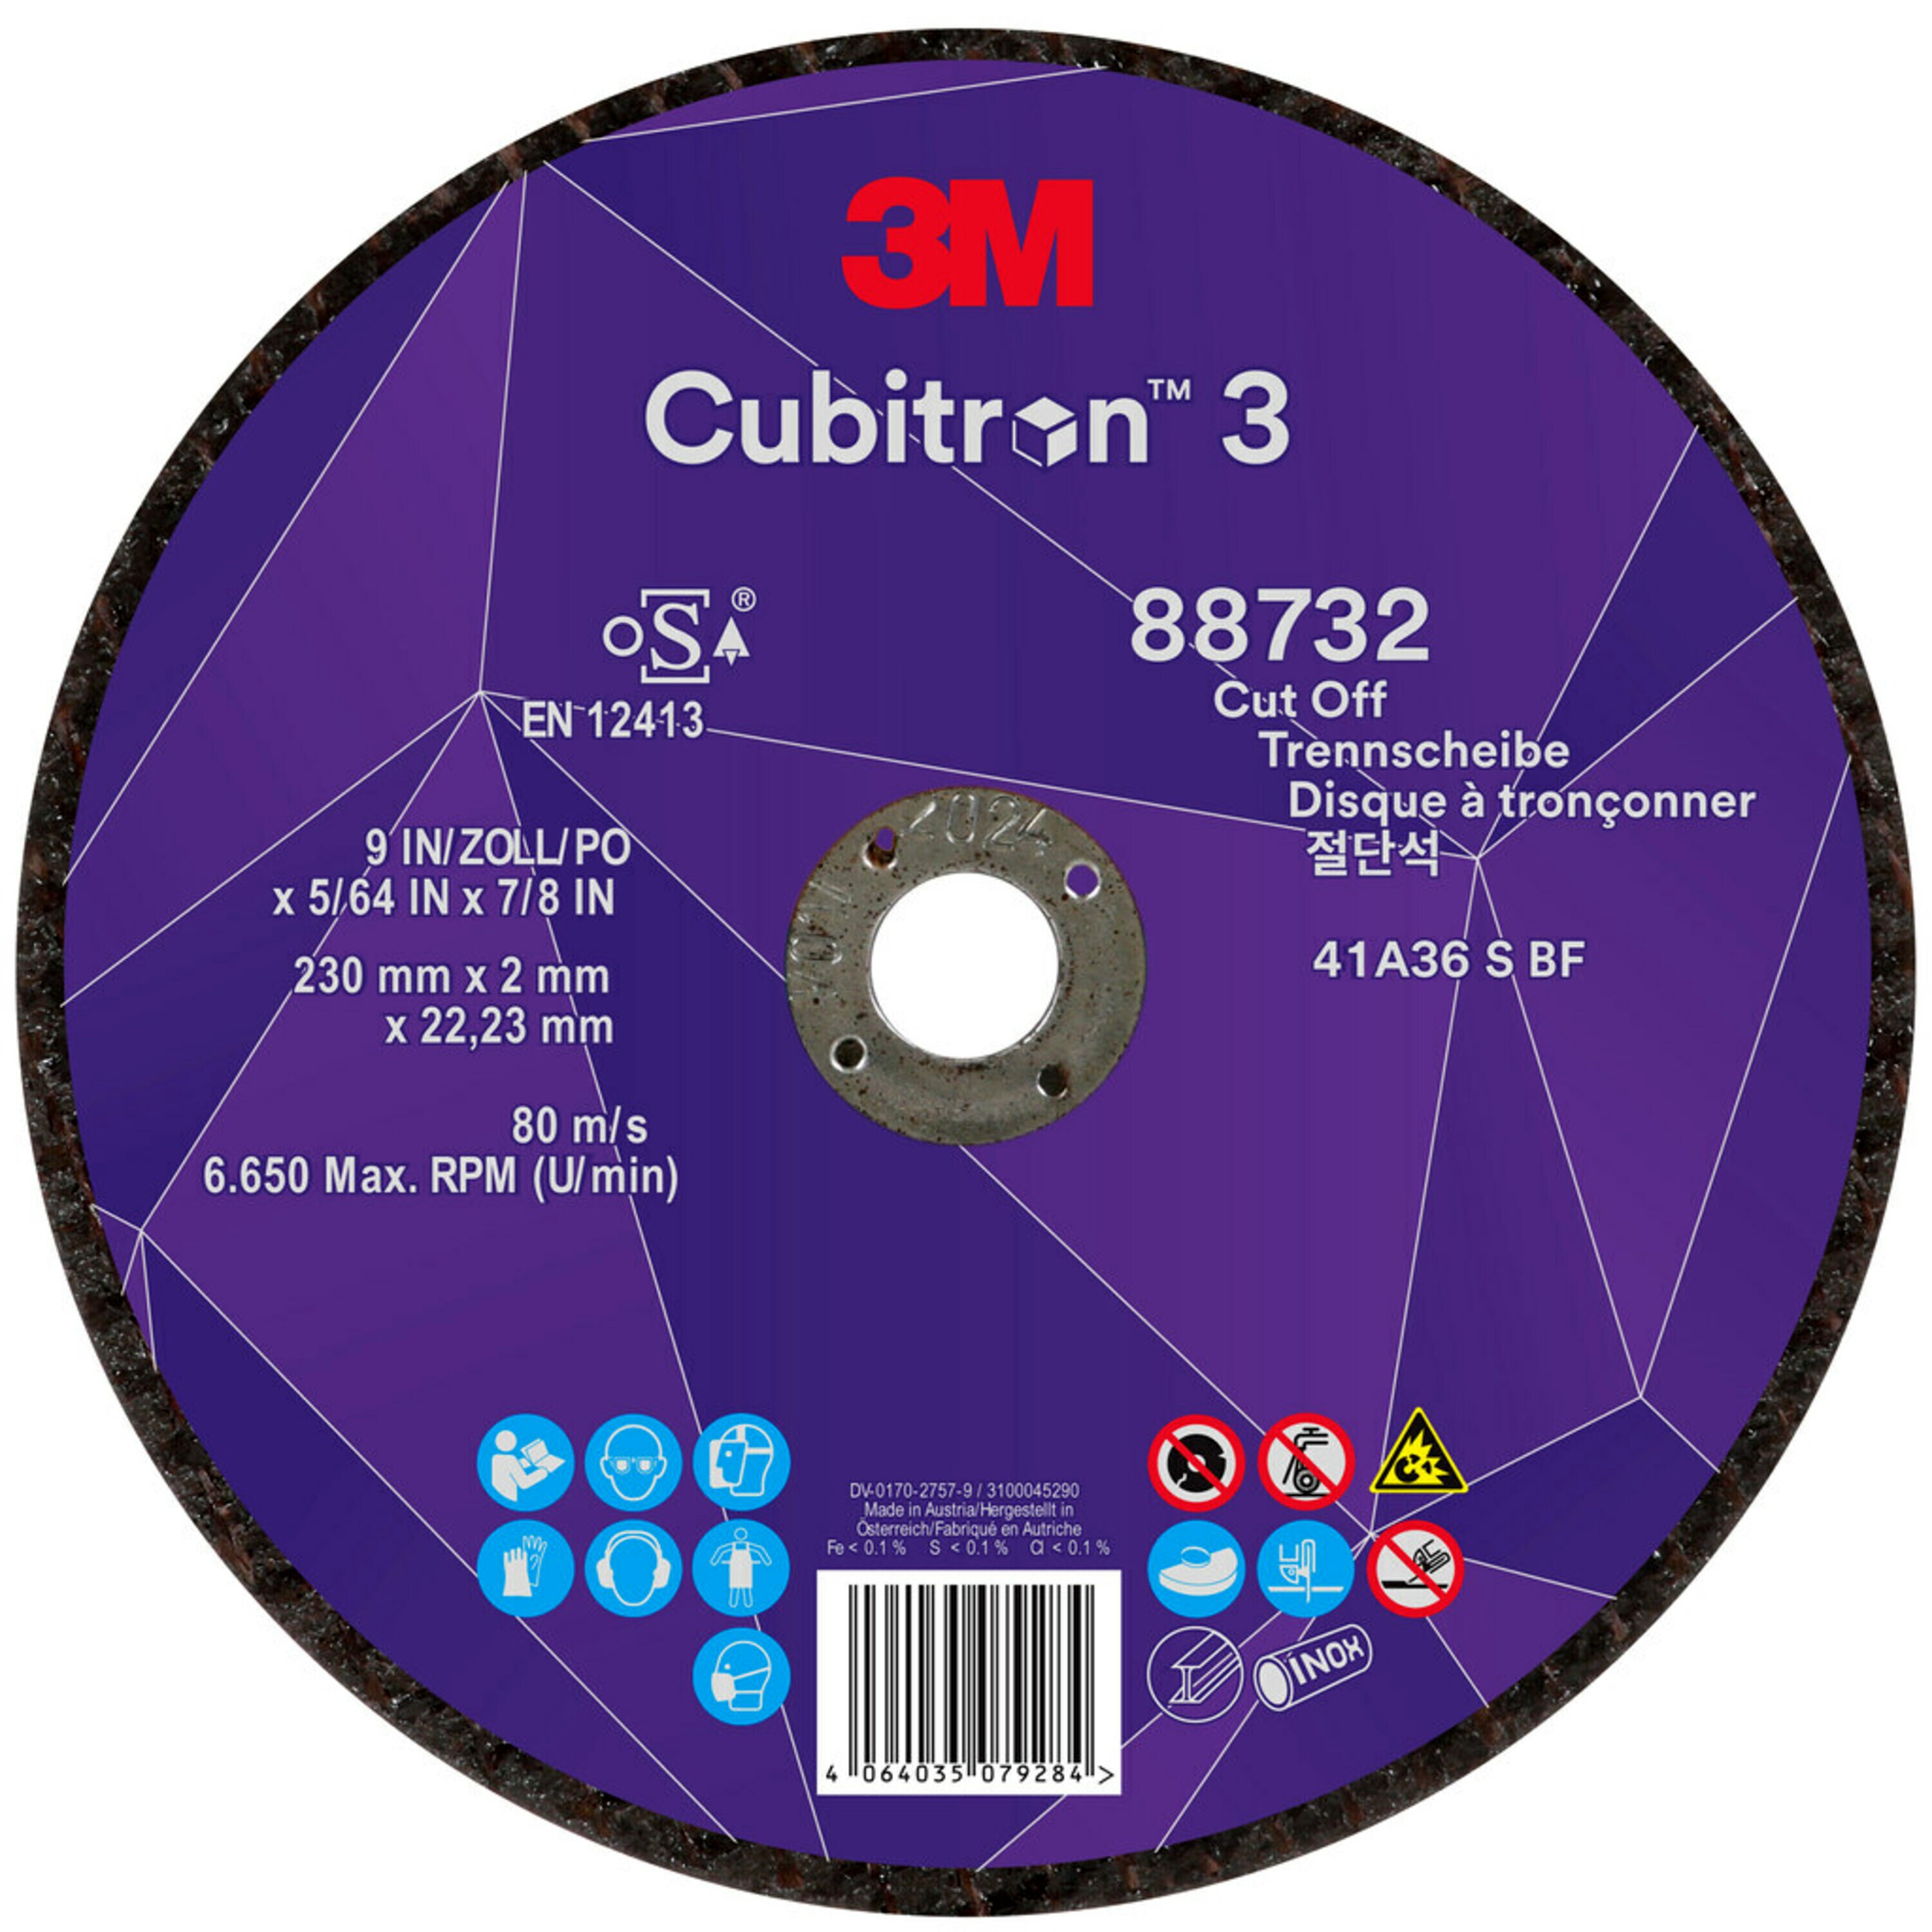 Disco da taglio 3M Cubitron 3, 230 mm, 2 mm, 22,23 mm, 36+, tipo 41 #88732